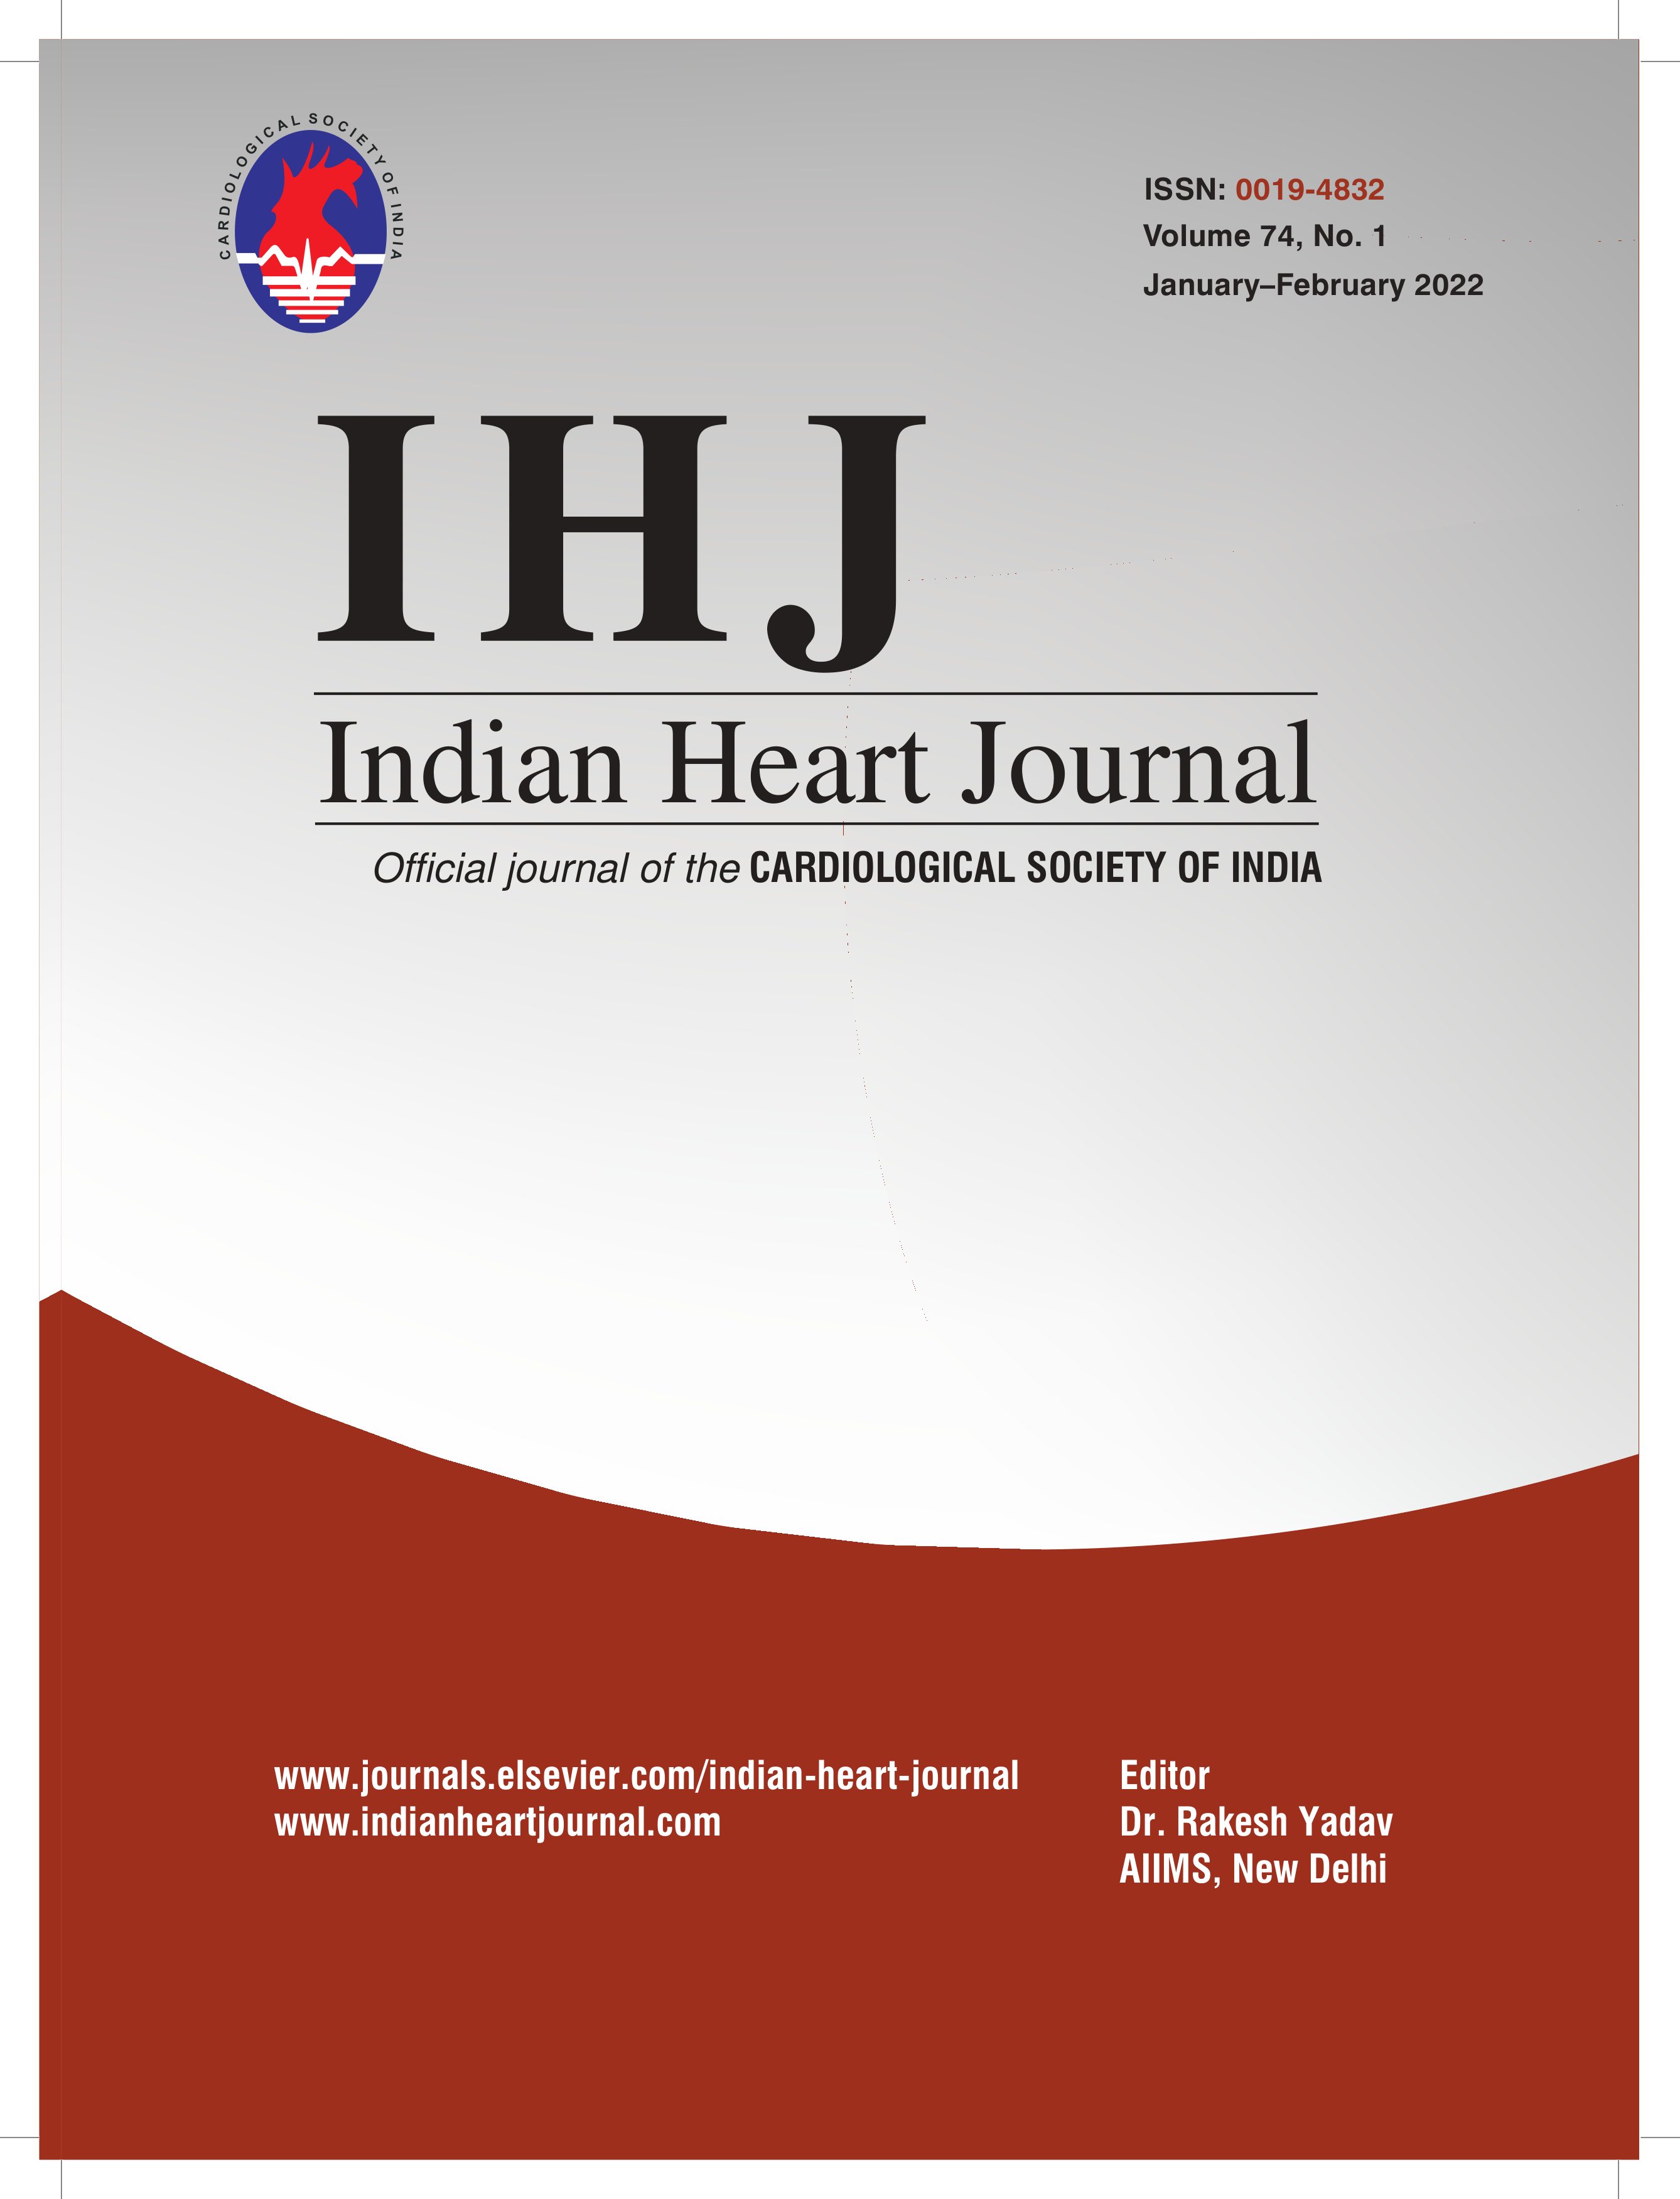 Indian Heart Journal